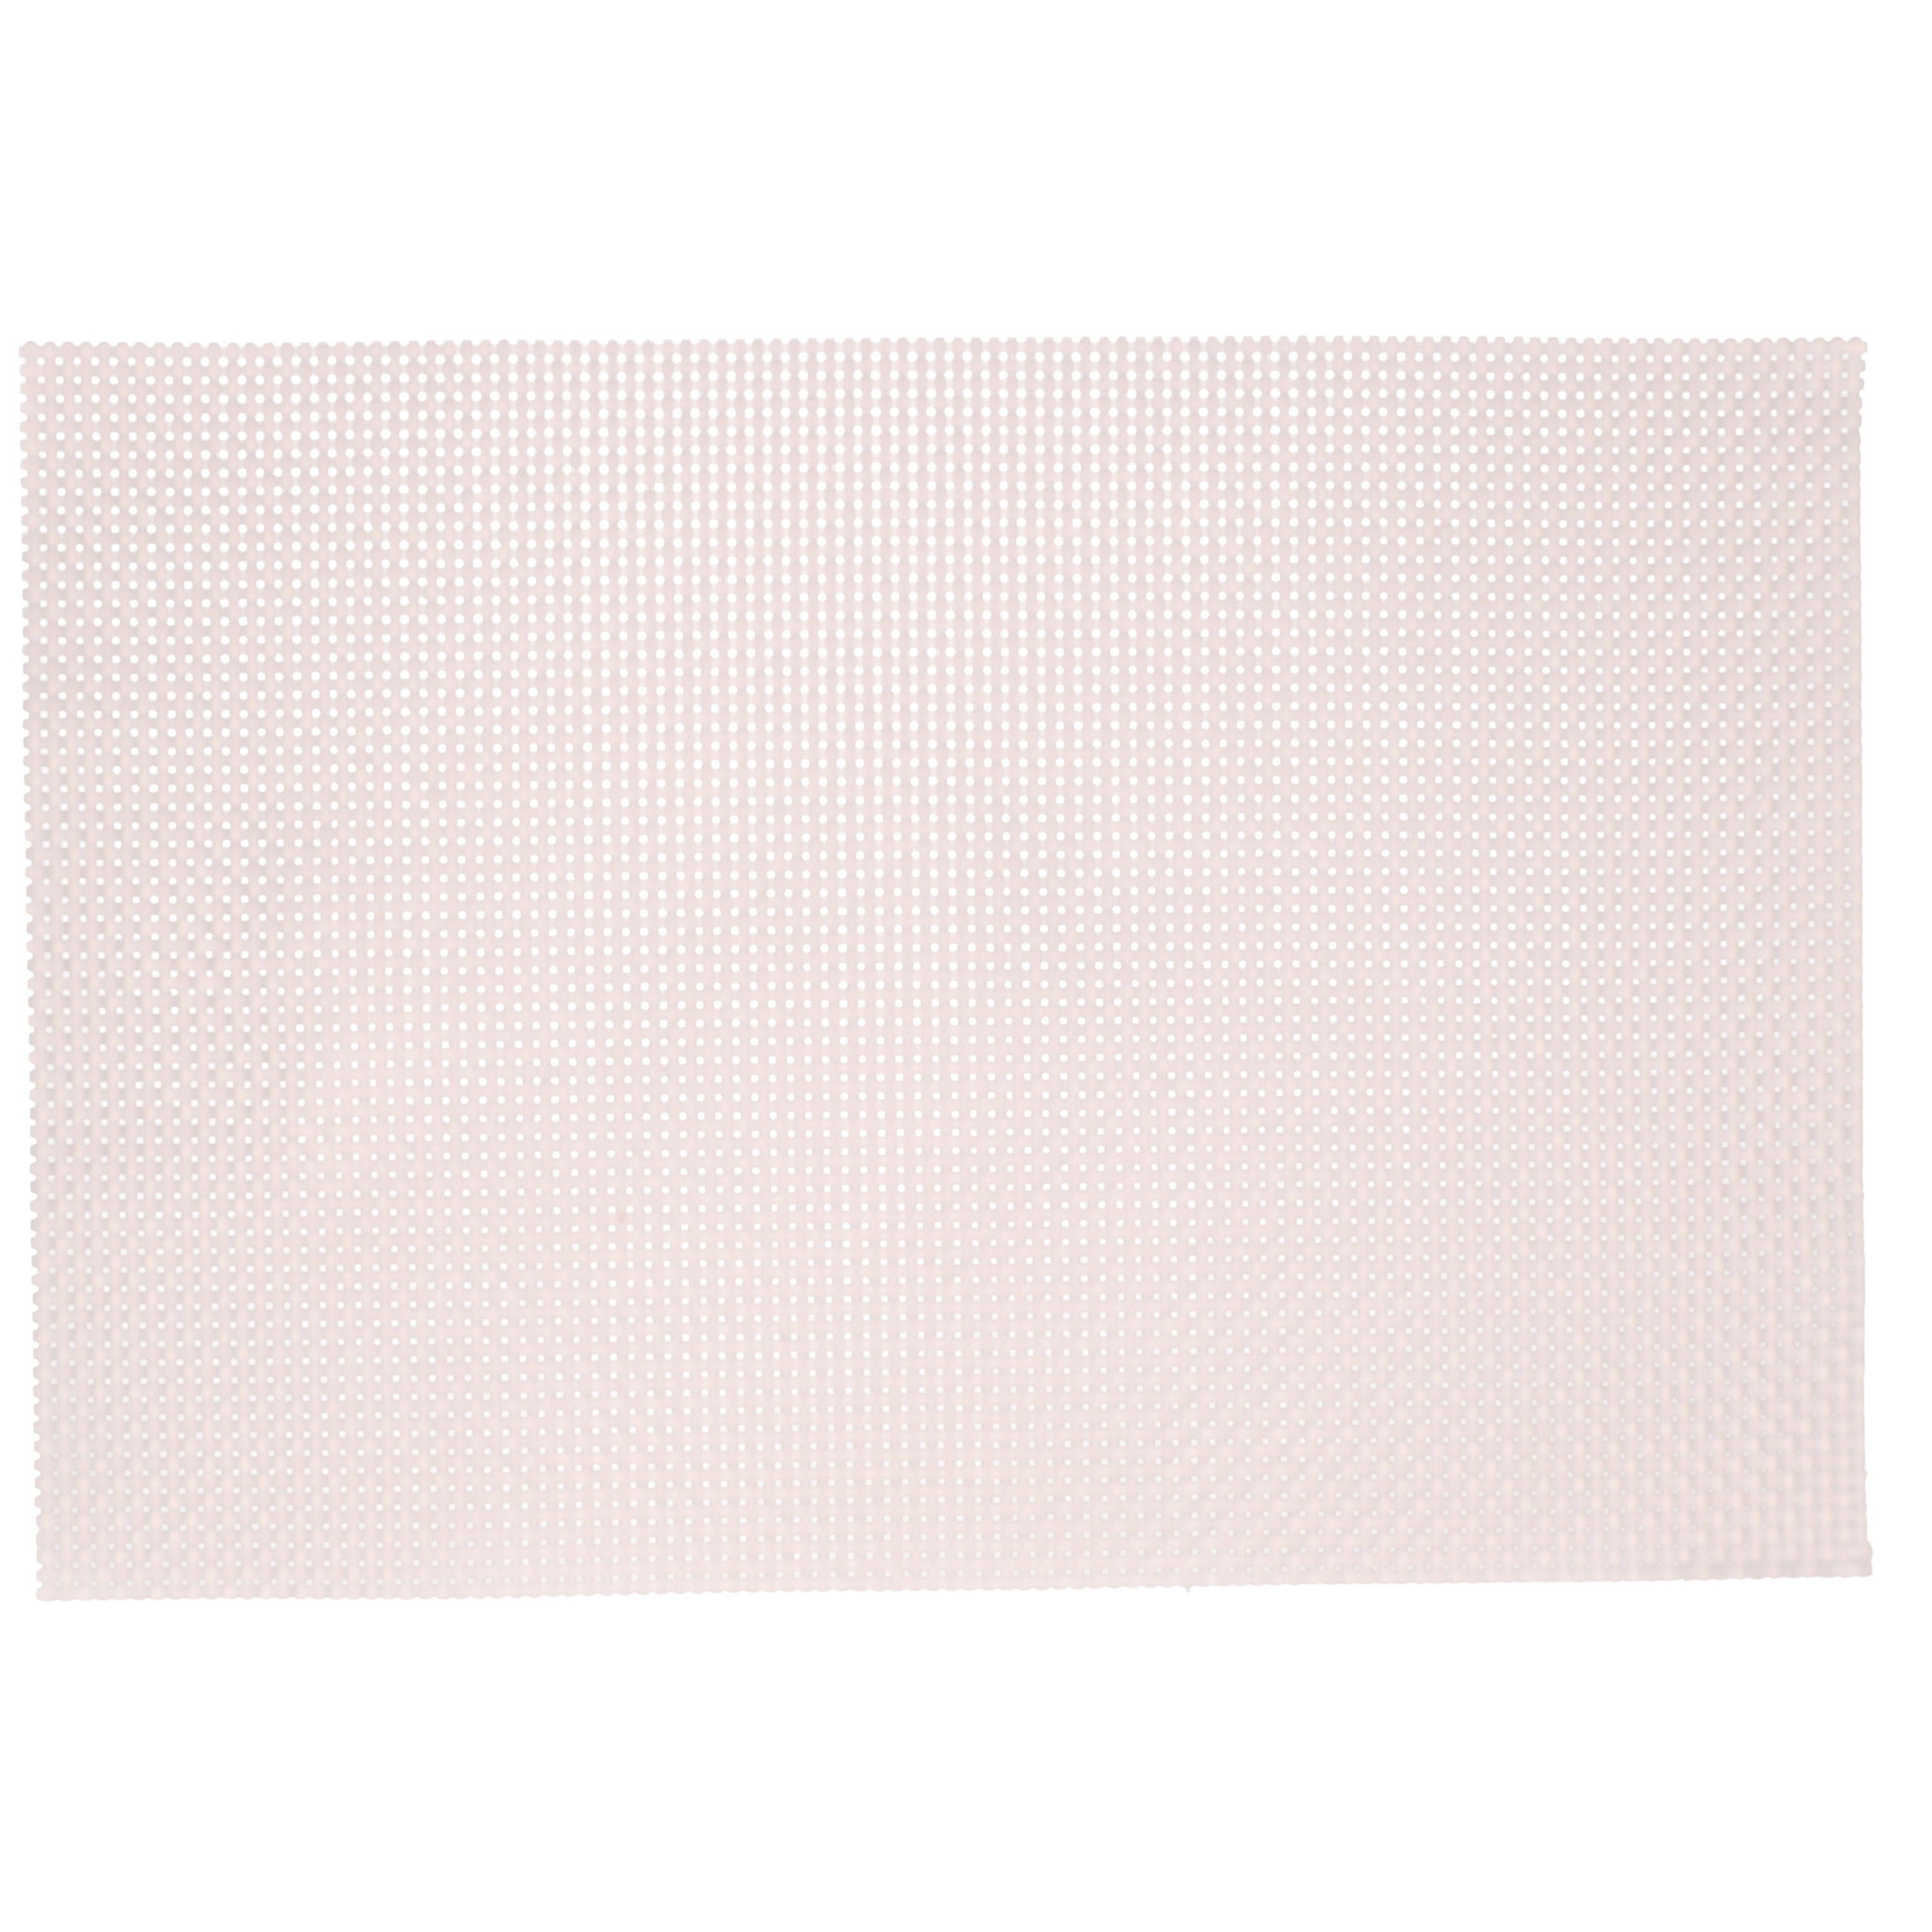 Kesper 3x Rechthoekige placemats lichtroze parelmoer glans geweven 29 x 43 cm -